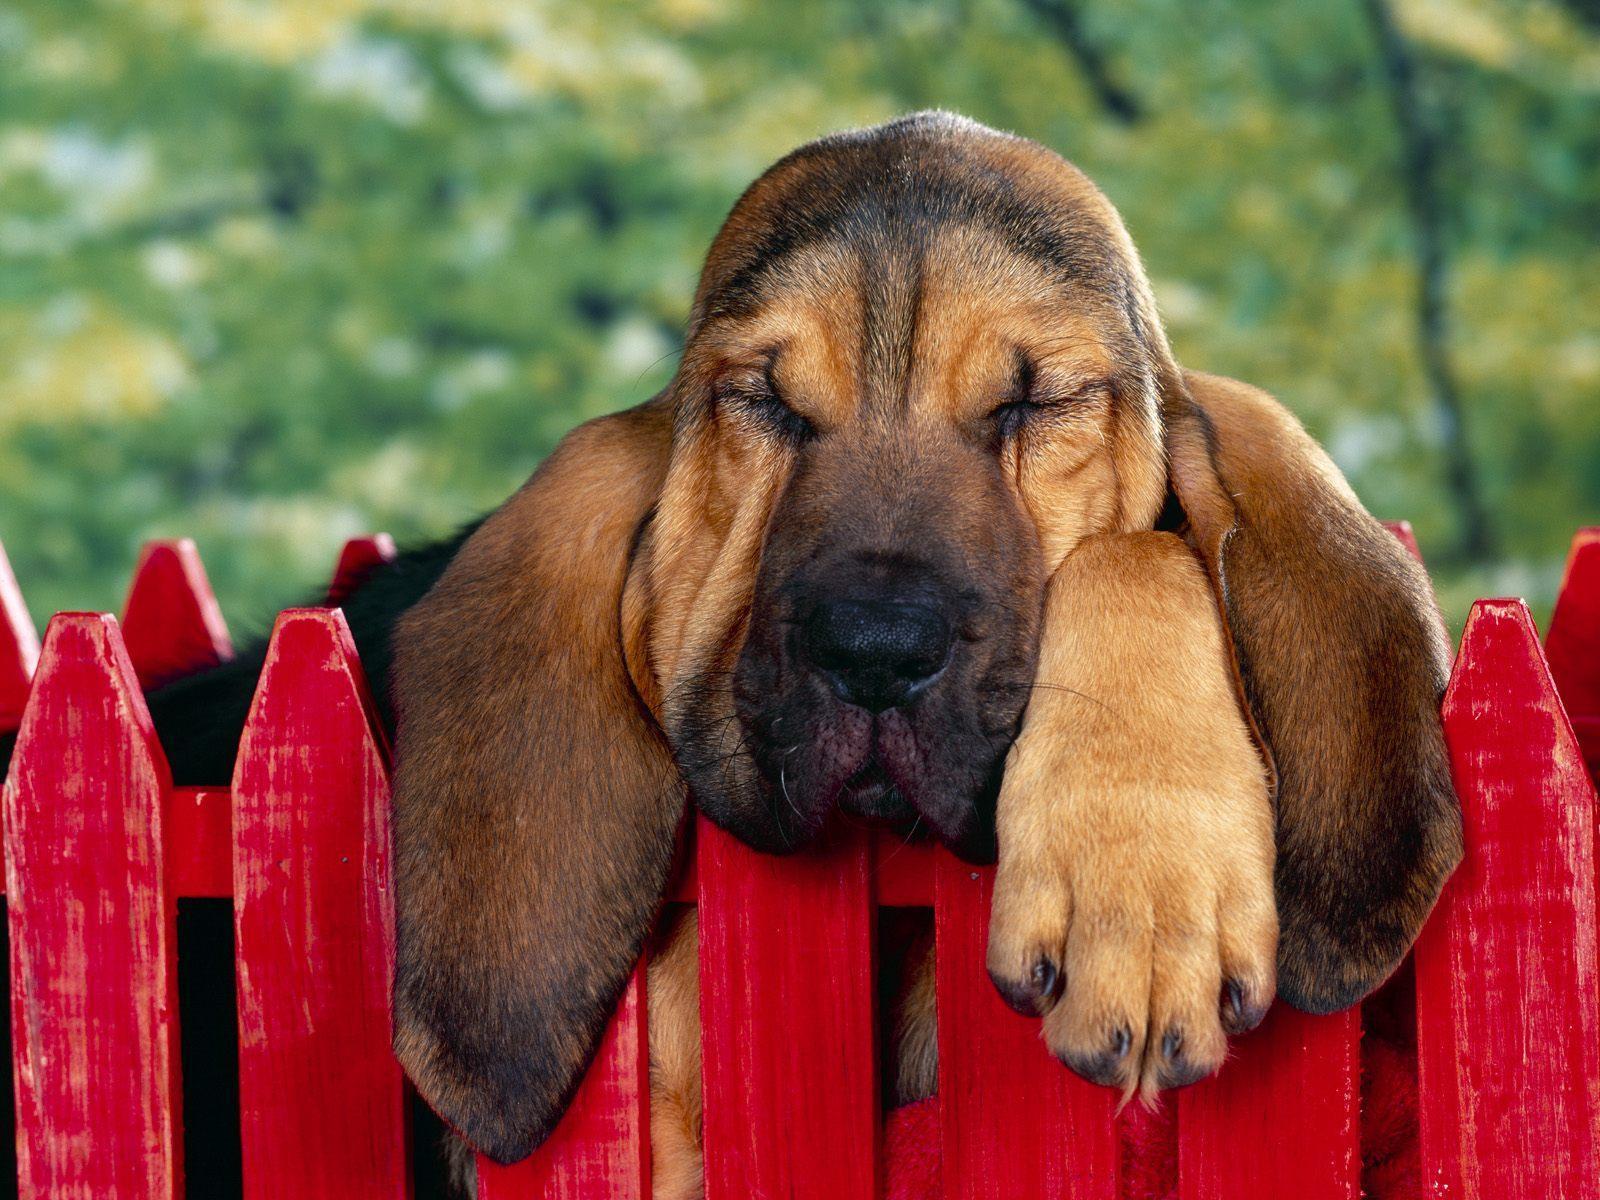 Bloodhound dog puppy free desktop background wallpaper image